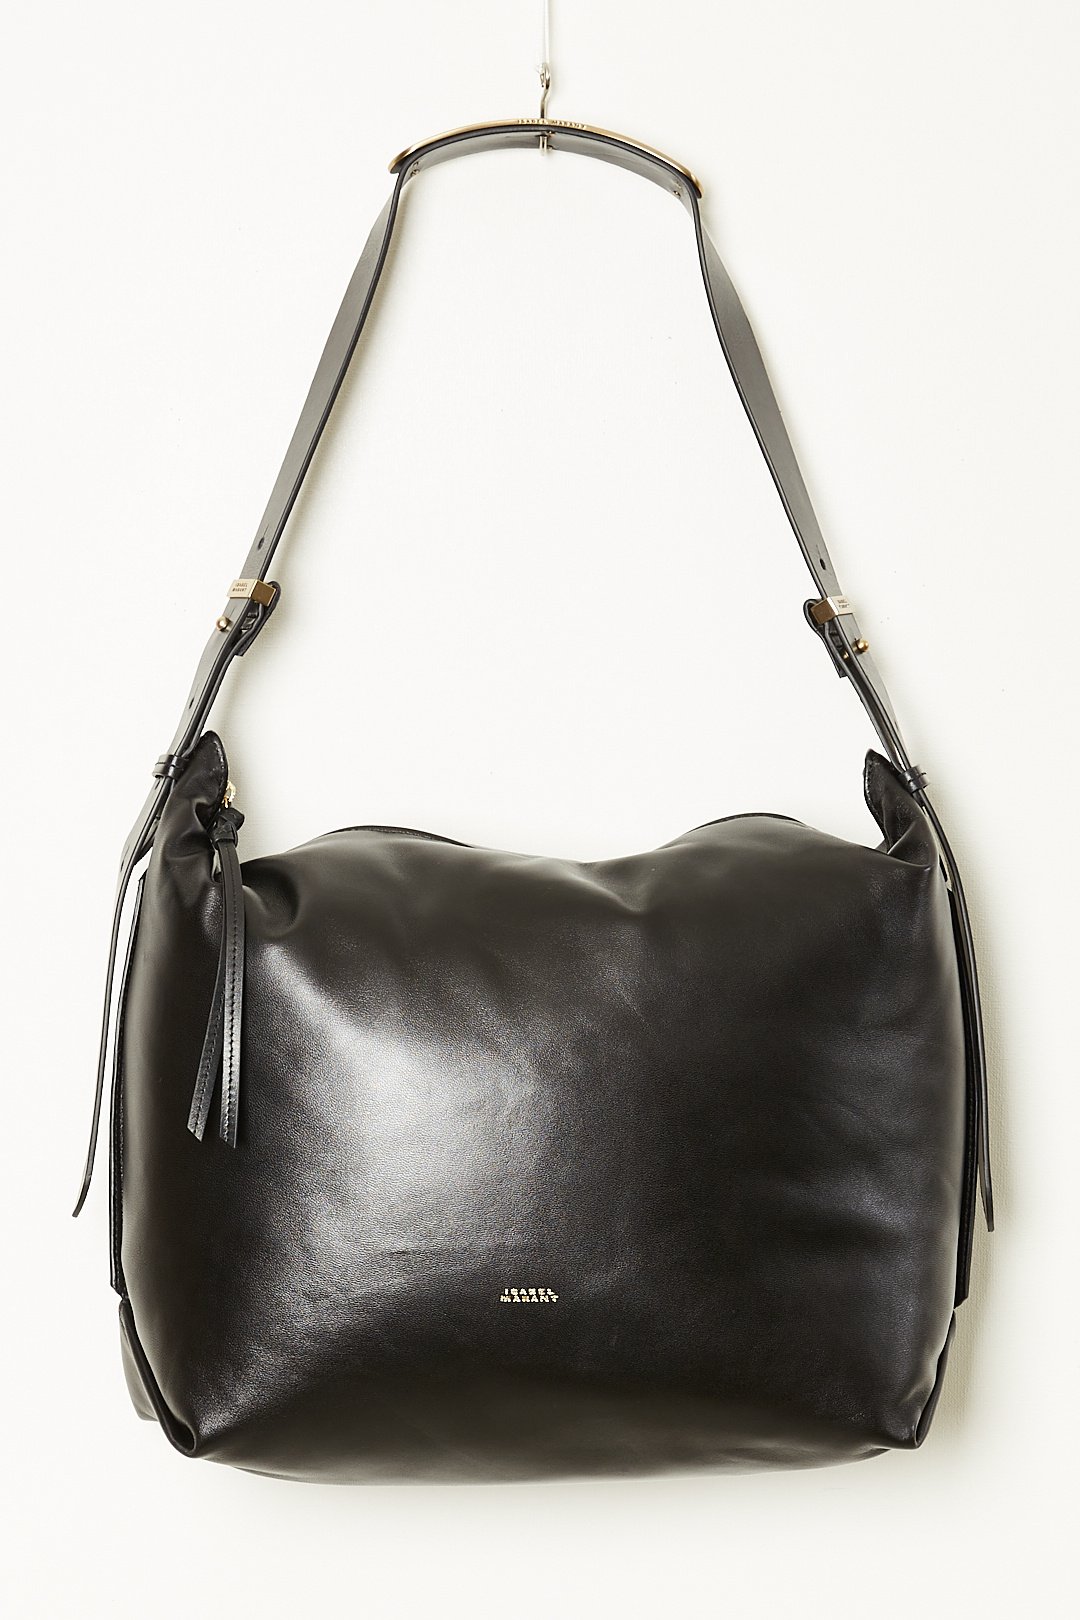 Isabel Marant - Leyden leather bag